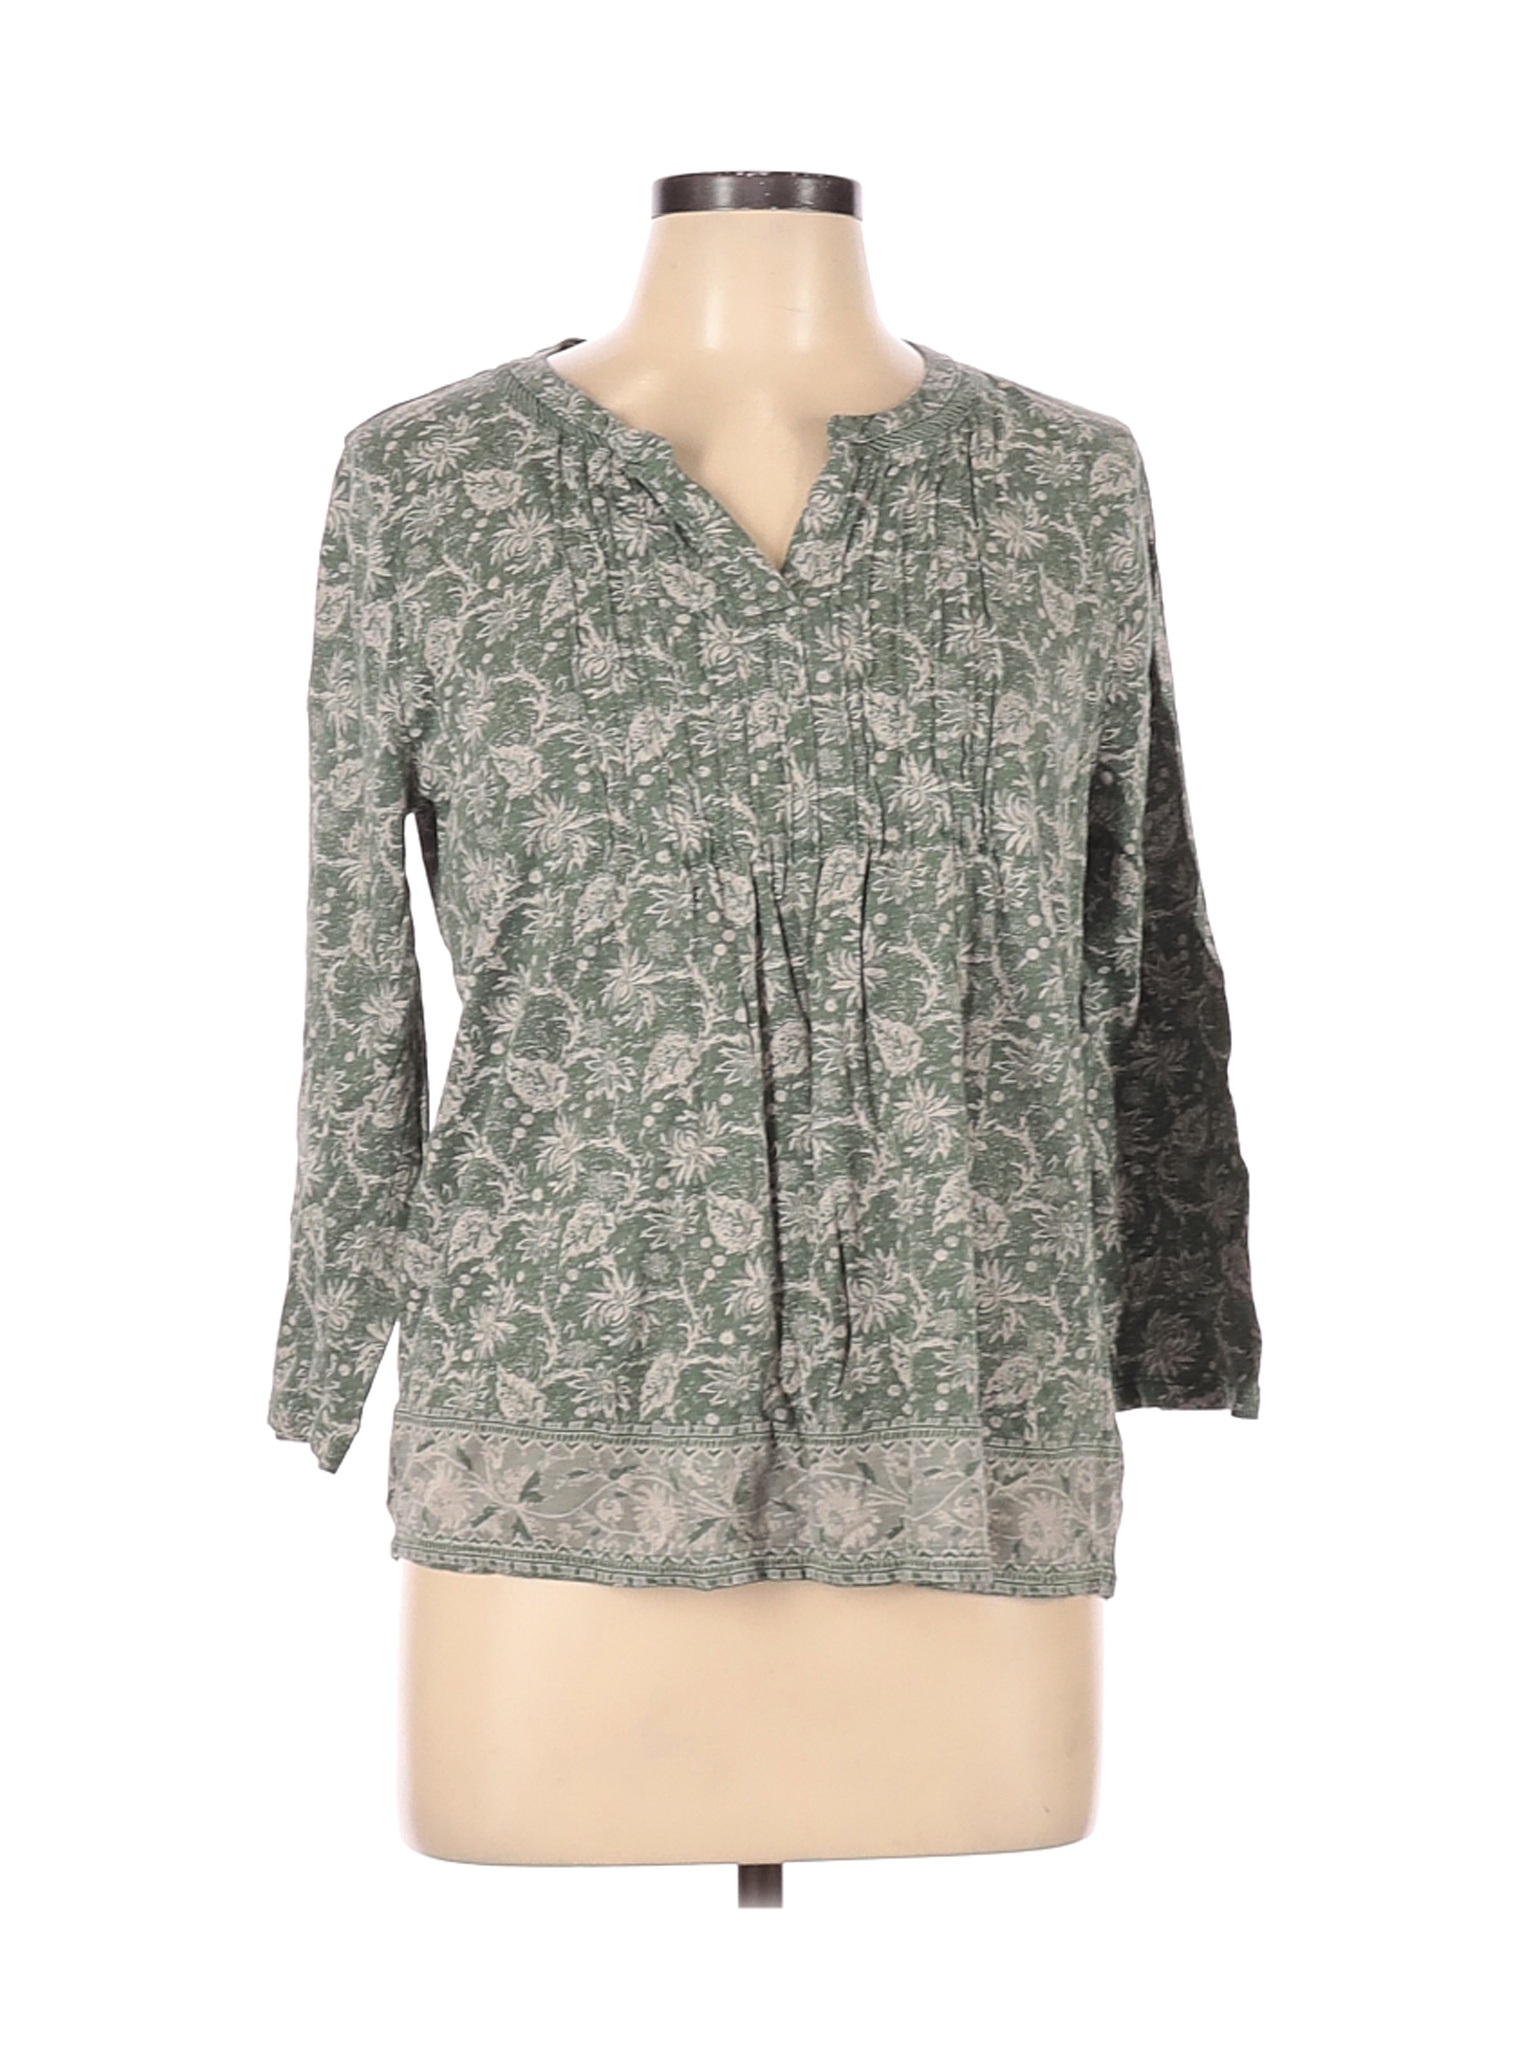 Lucky Brand Women Green Long Sleeve Top L | eBay